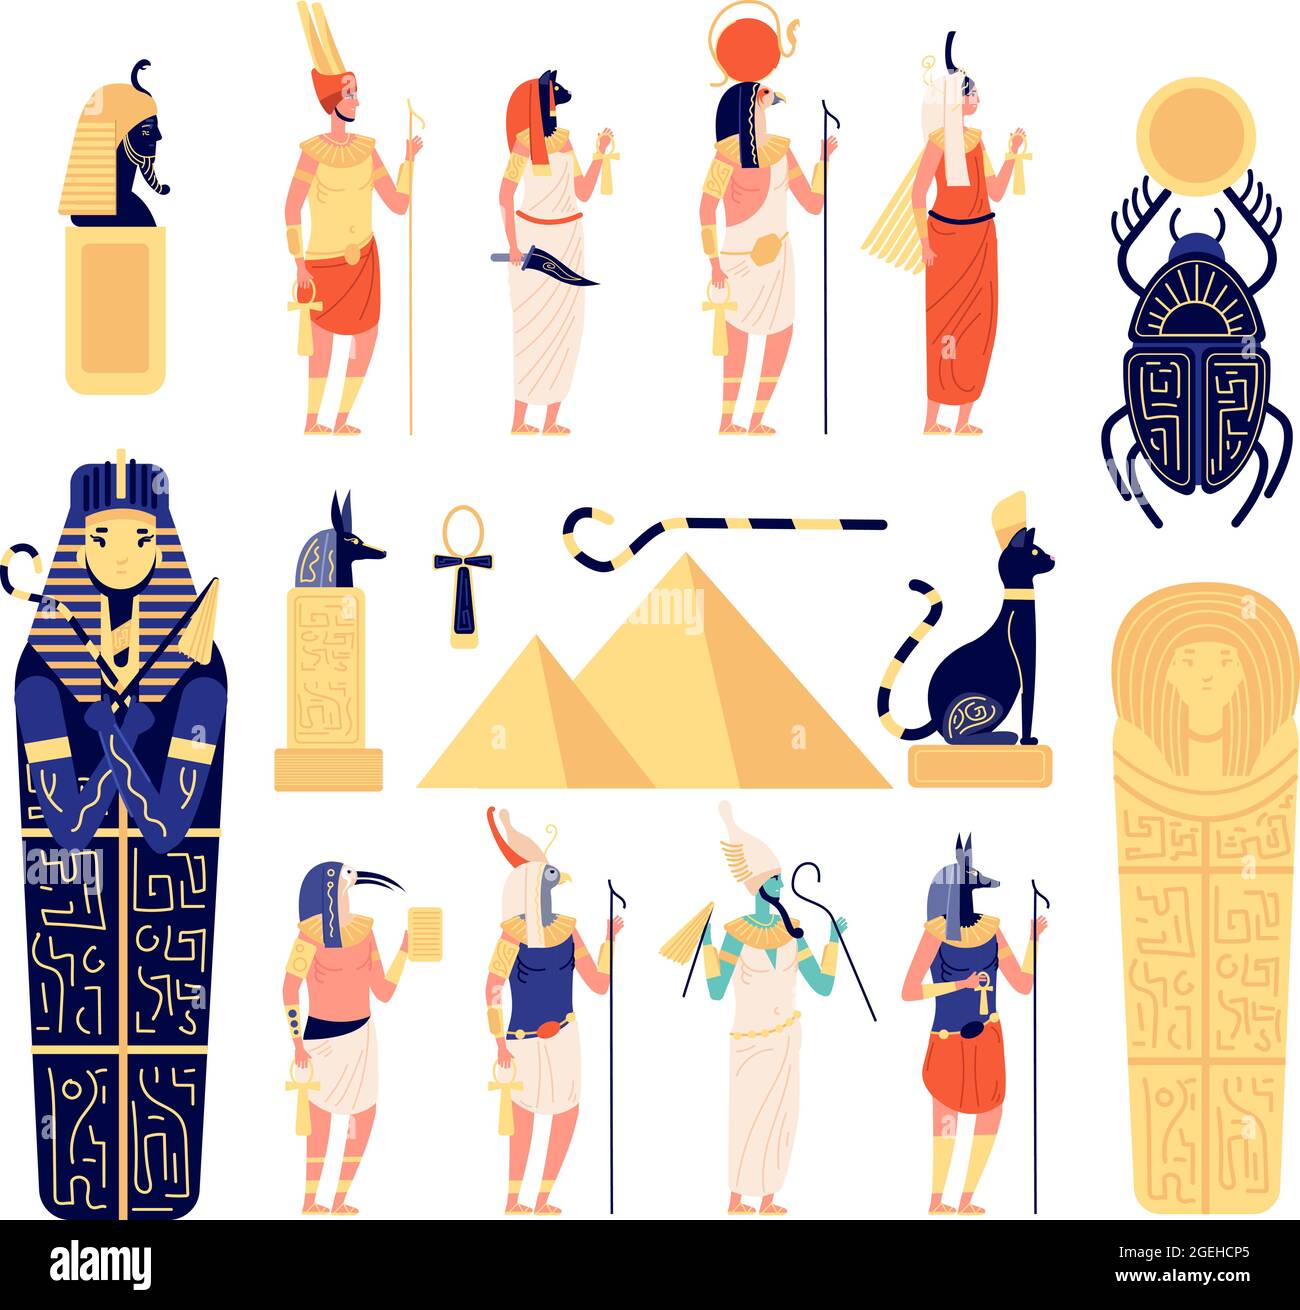 Ägyptische Elemente. Alte ägyptische Götter, Göttin Mythologie Skulptur. Flache Pyramide, isolierte historische Archäologie Symbole Utter Vektor-Set Stock Vektor